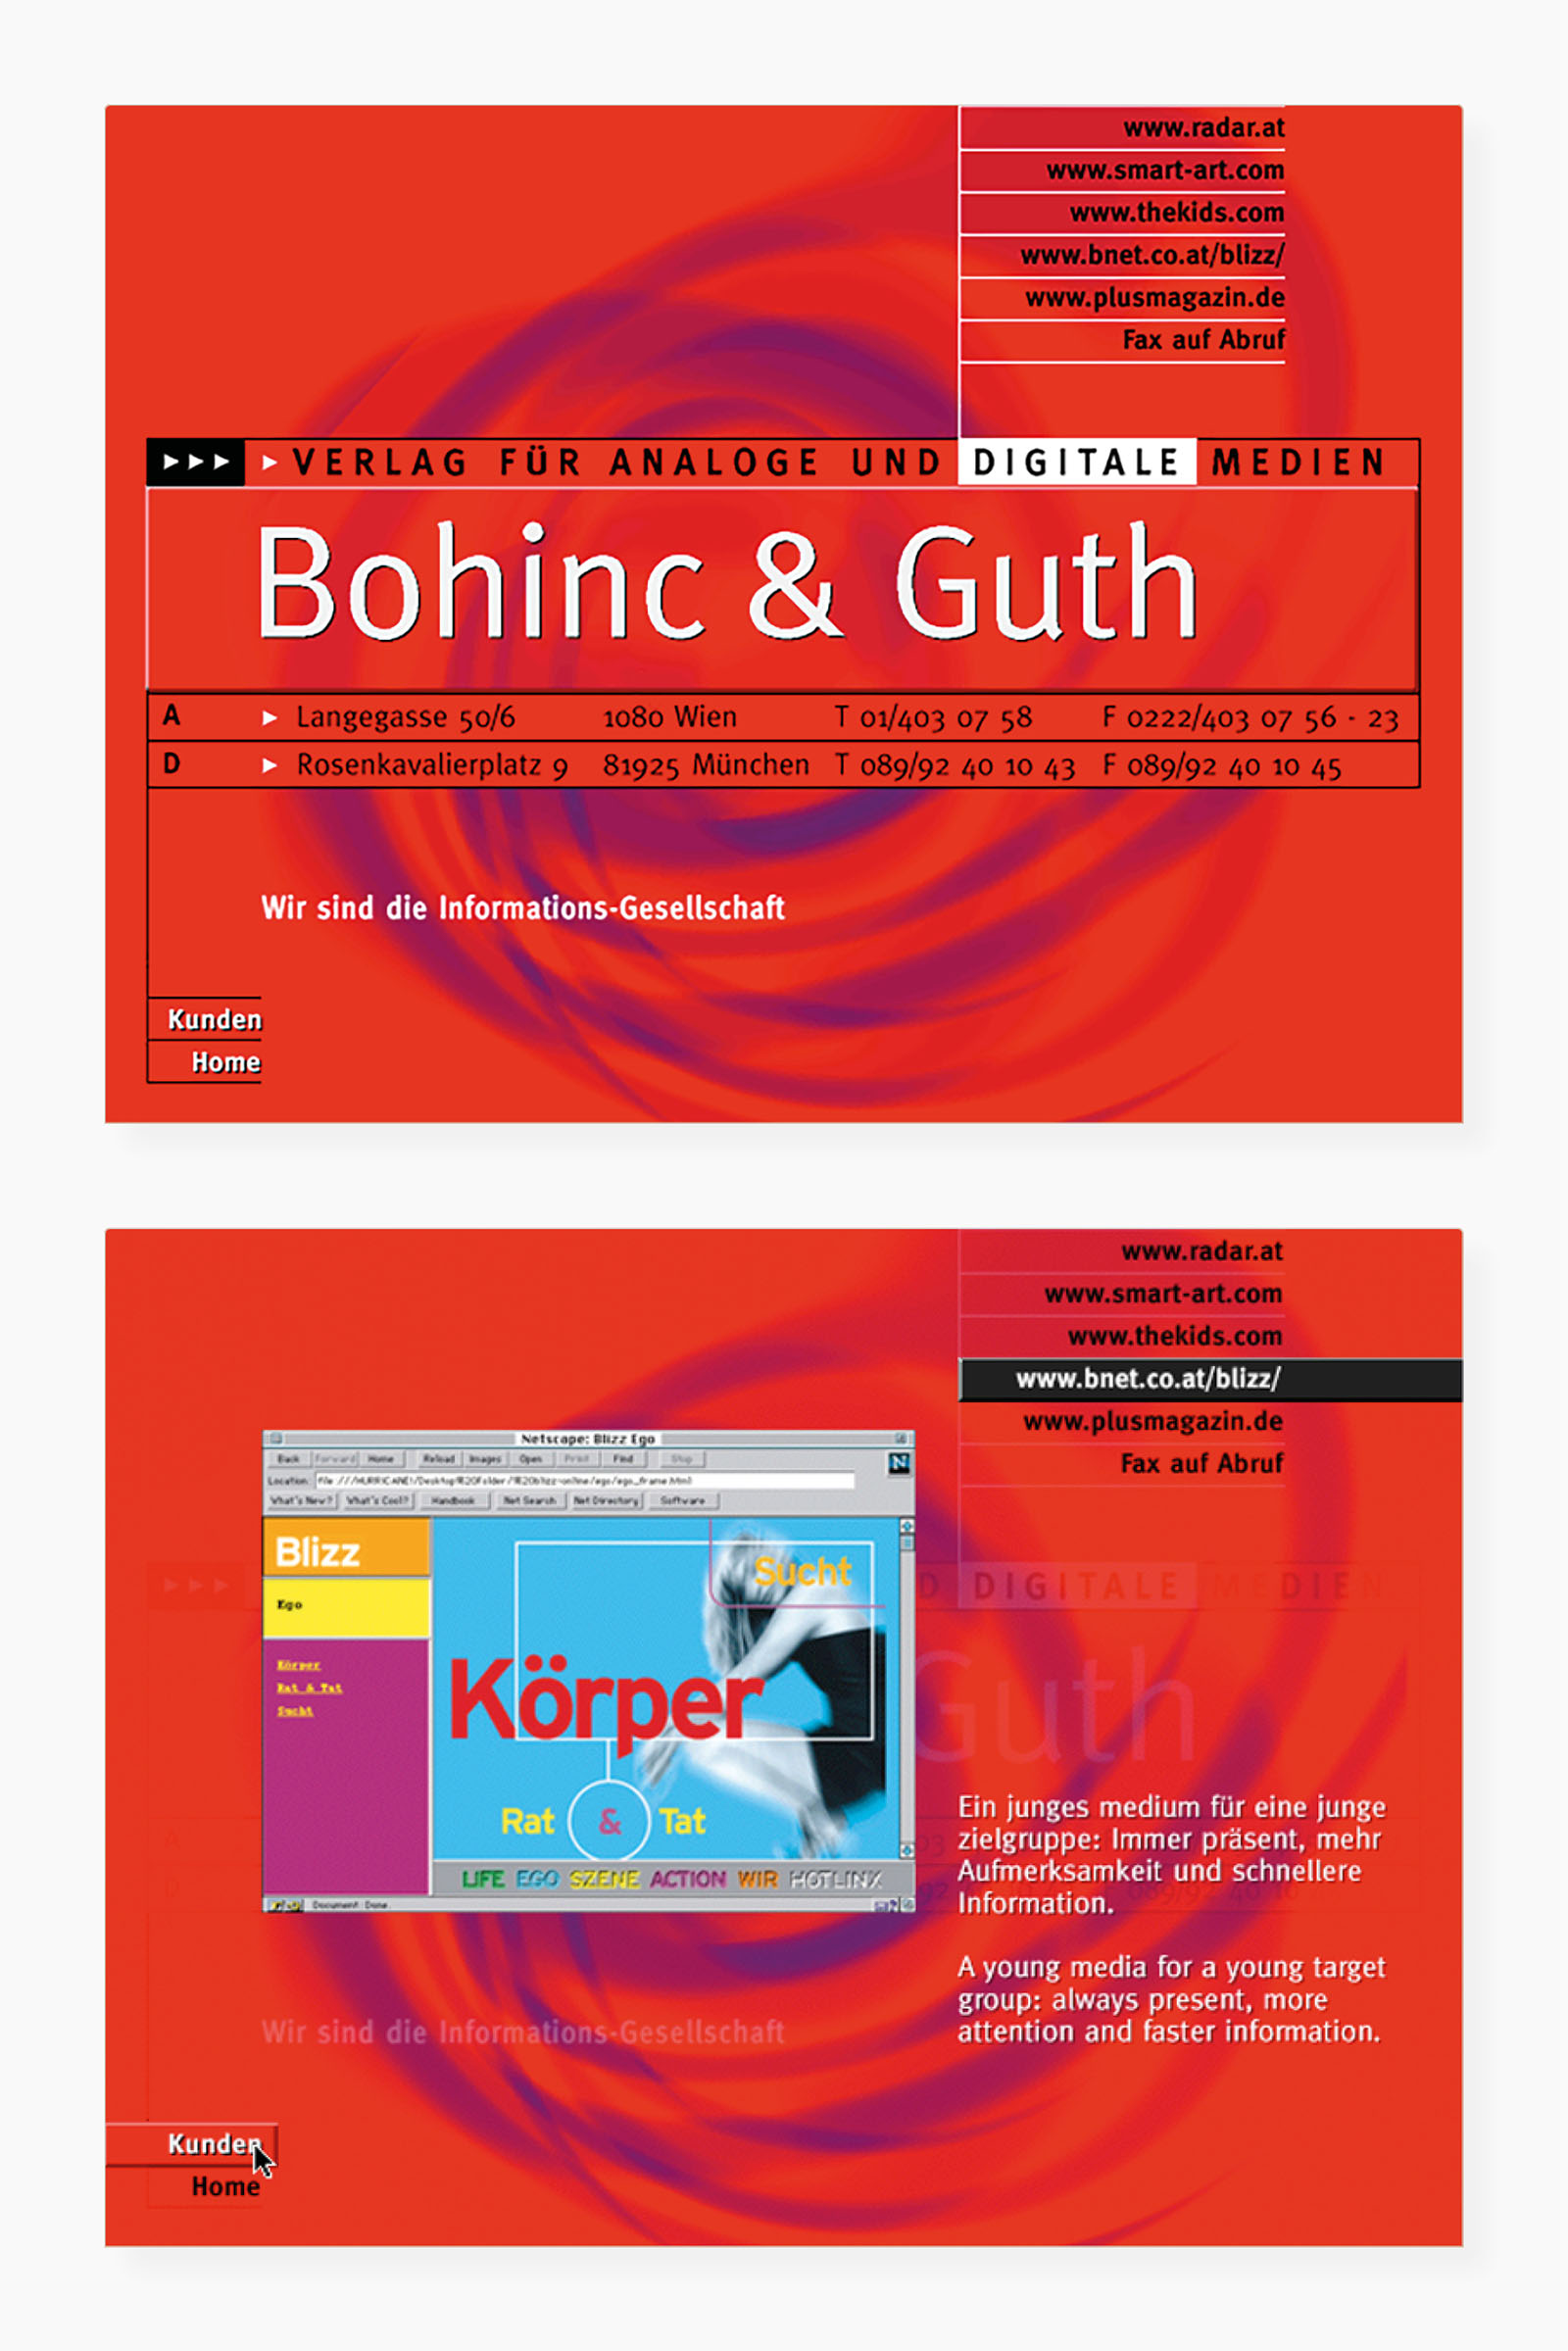 Auswahl von Screens der Portfolio-CD-ROM (Startscreen, Bereich "Blizz Magazin")